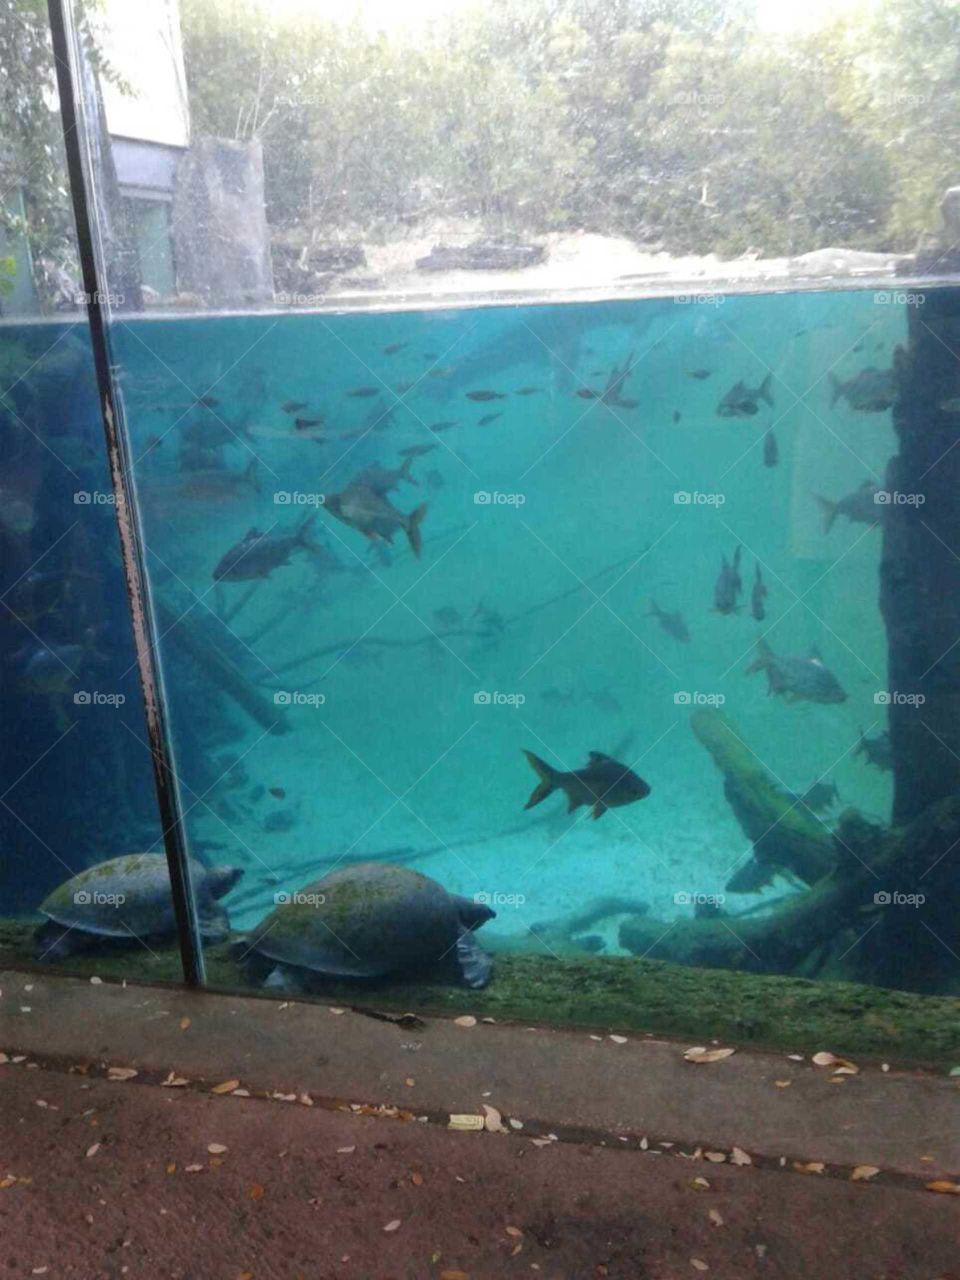 sea aquarium